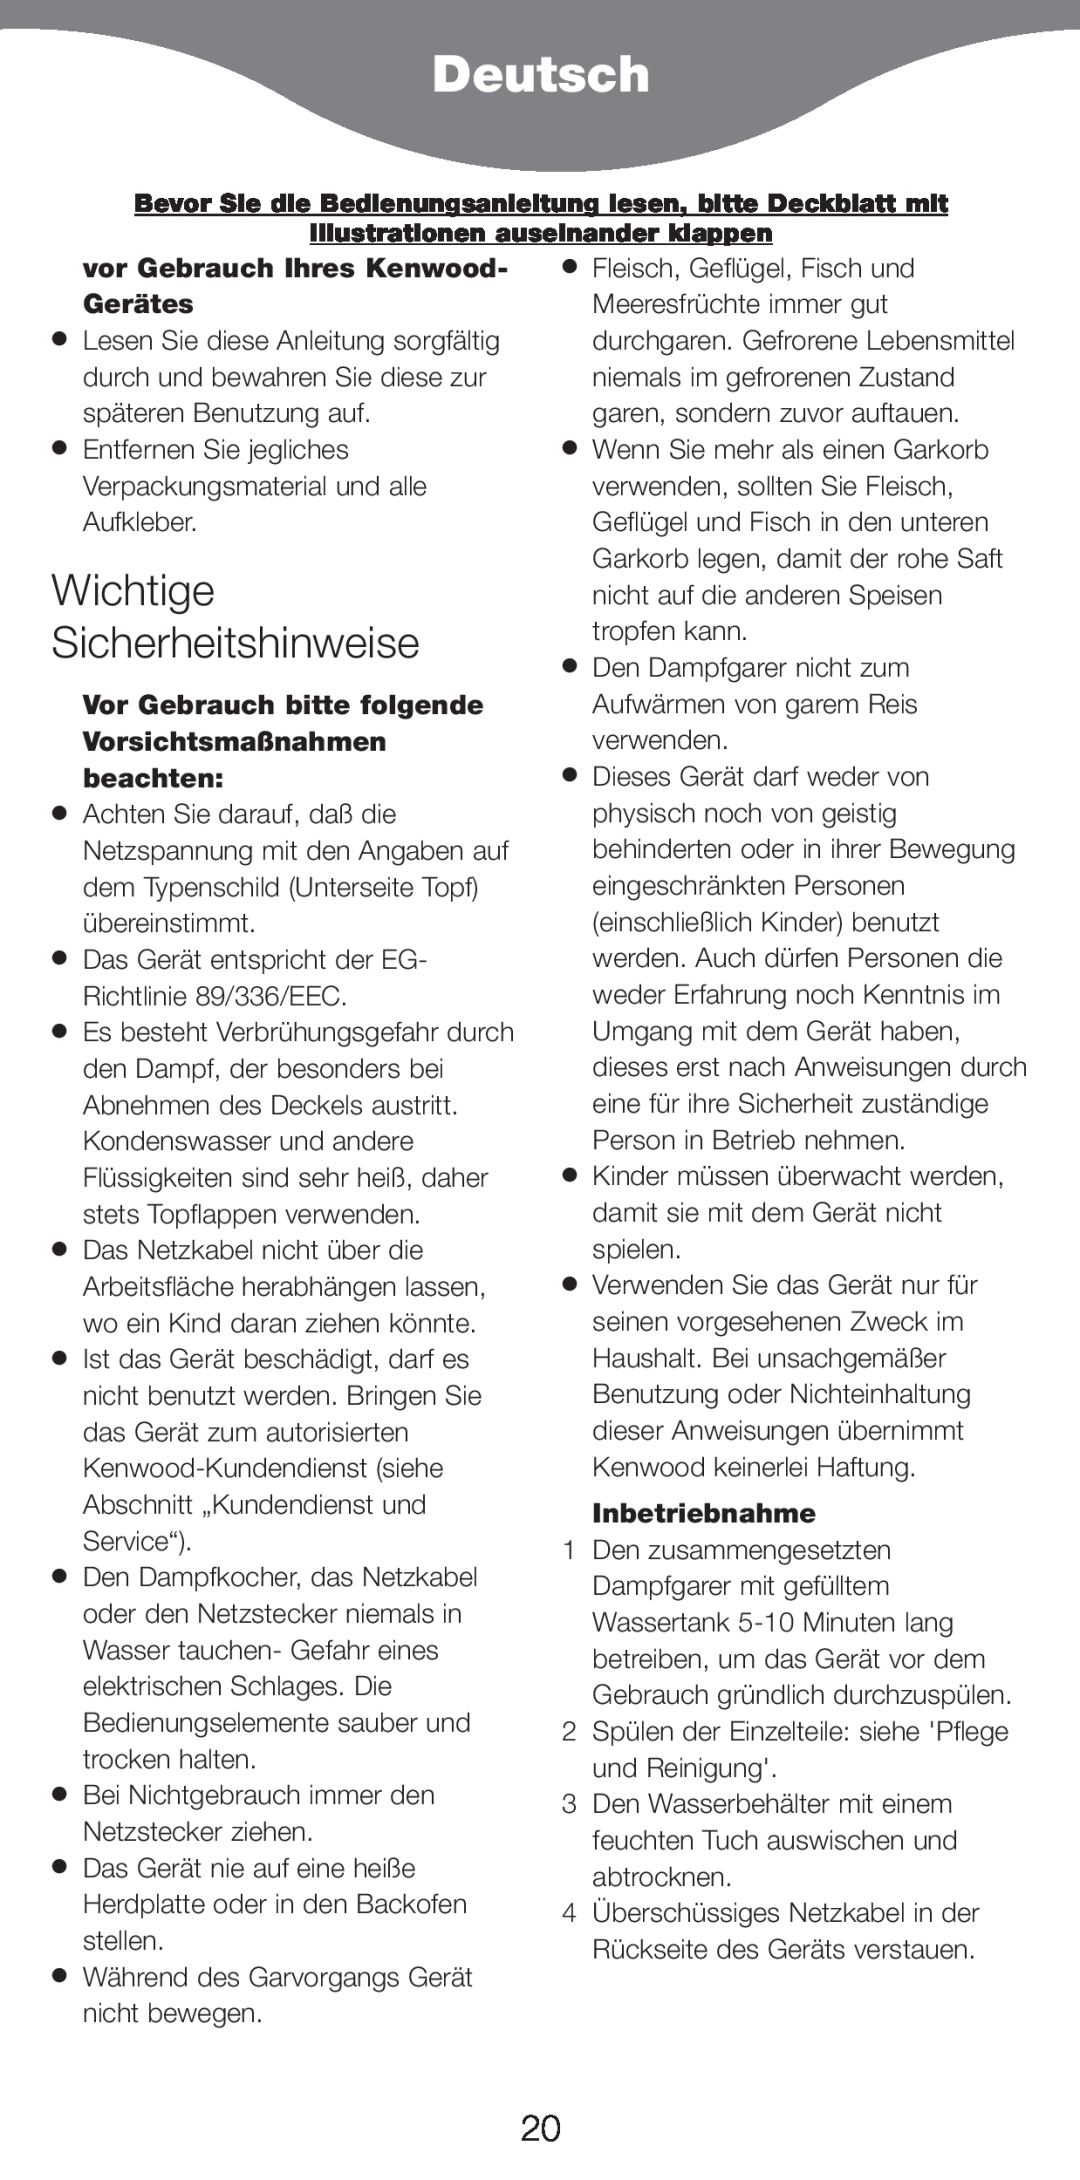 Kenwood FS470 series manual Deutsch, Wichtige Sicherheitshinweise, vor Gebrauch Ihres Kenwood- GerŠtes, Inbetriebnahme 